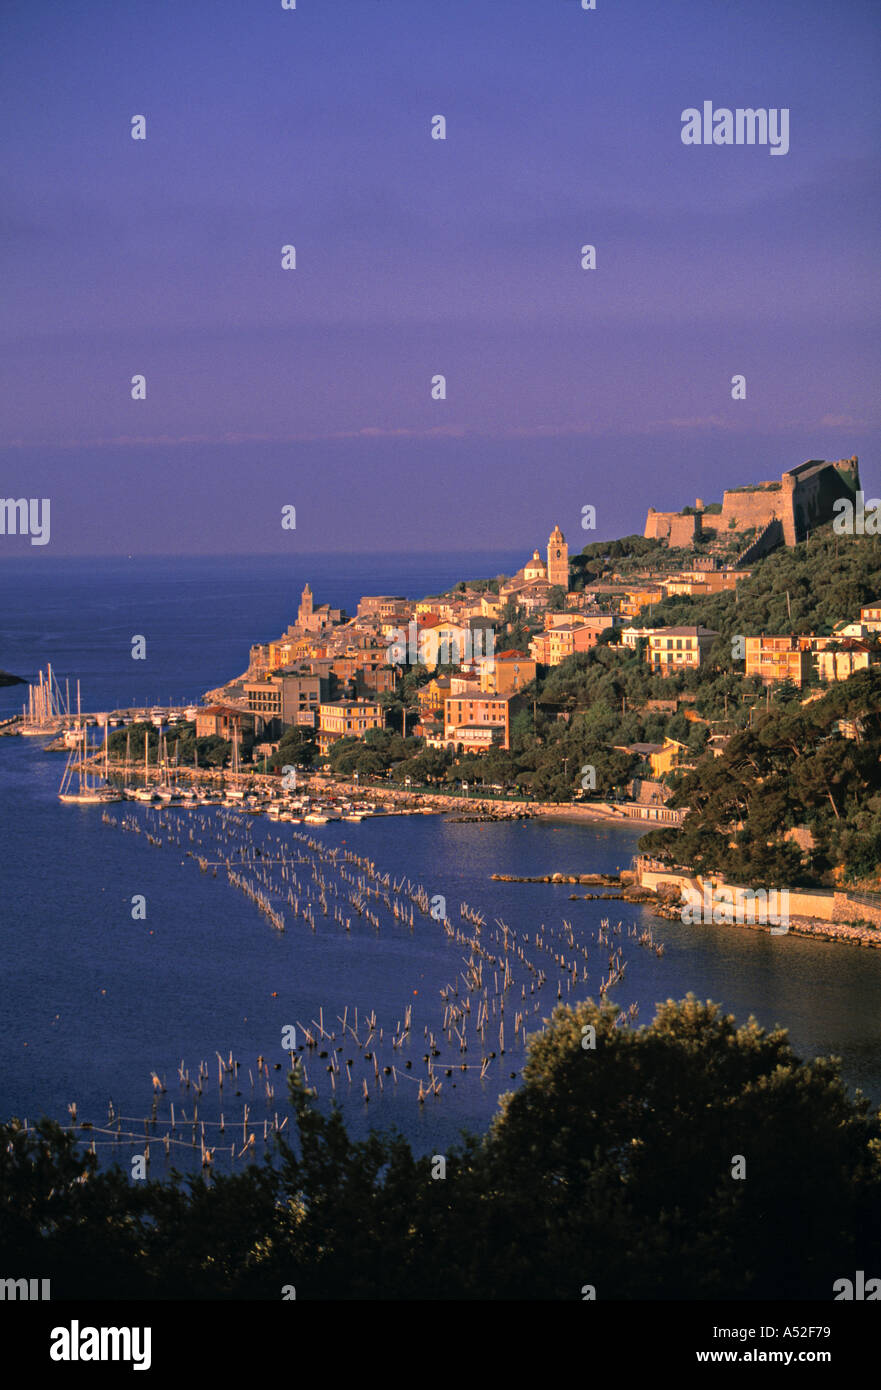 Porte Venere, Riviera di Levante, Liguria, Italy Stock Photo - Alamy